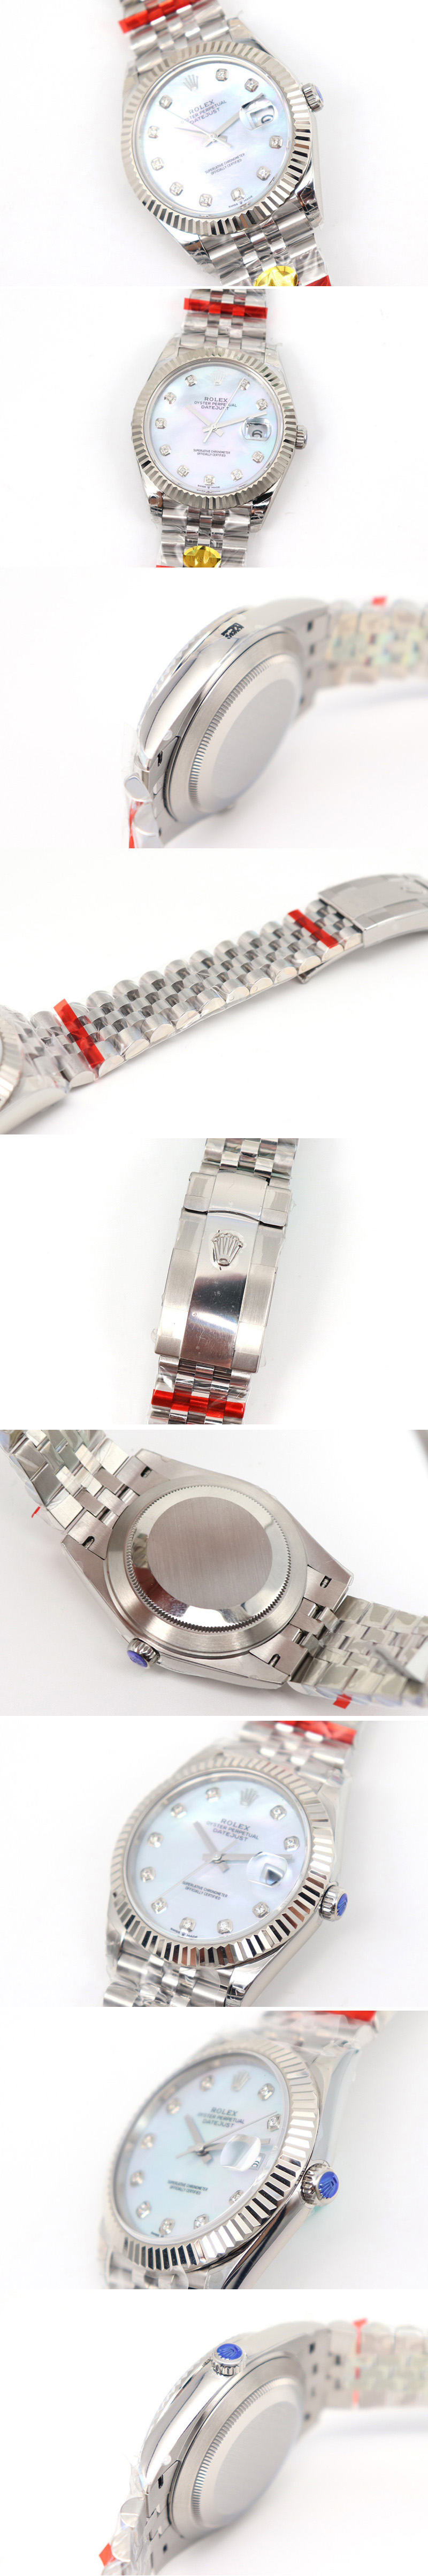 Replica Rolex Datejust II Watches